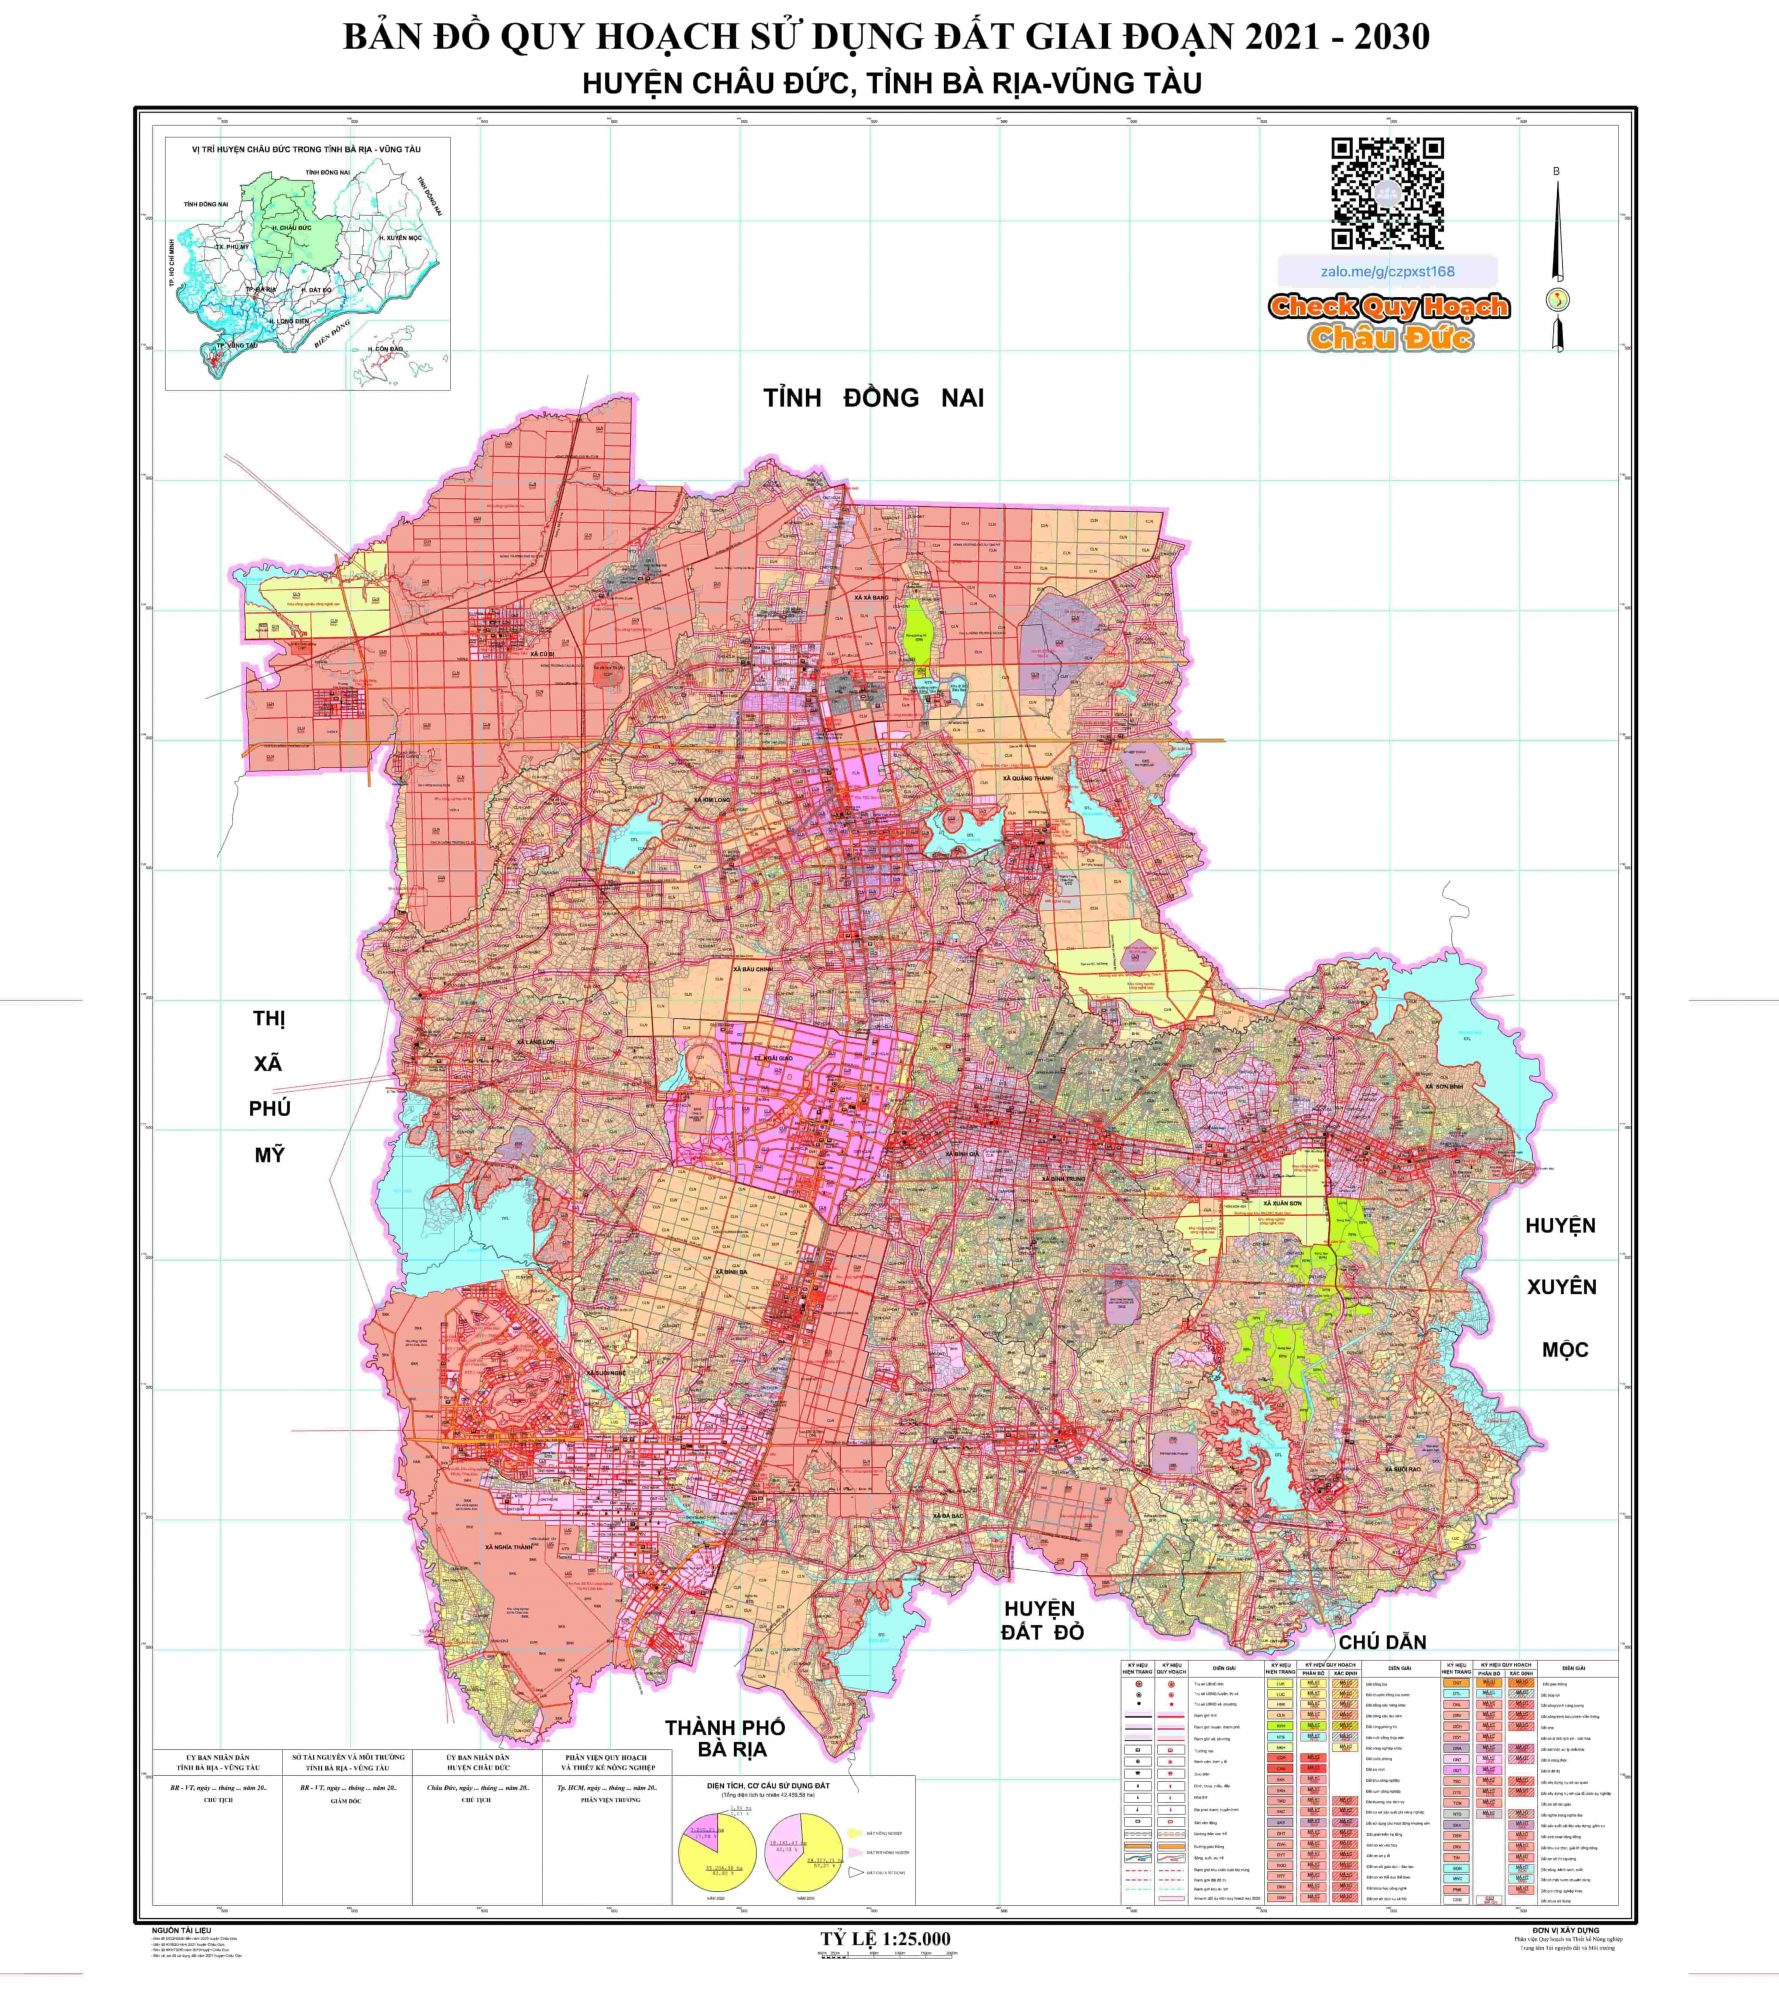 Bảng chi tiết bản đồ quy hoạch huyện châu đức 2030 đáng tin cậy để điều tra nền kinh tế của địa phươ